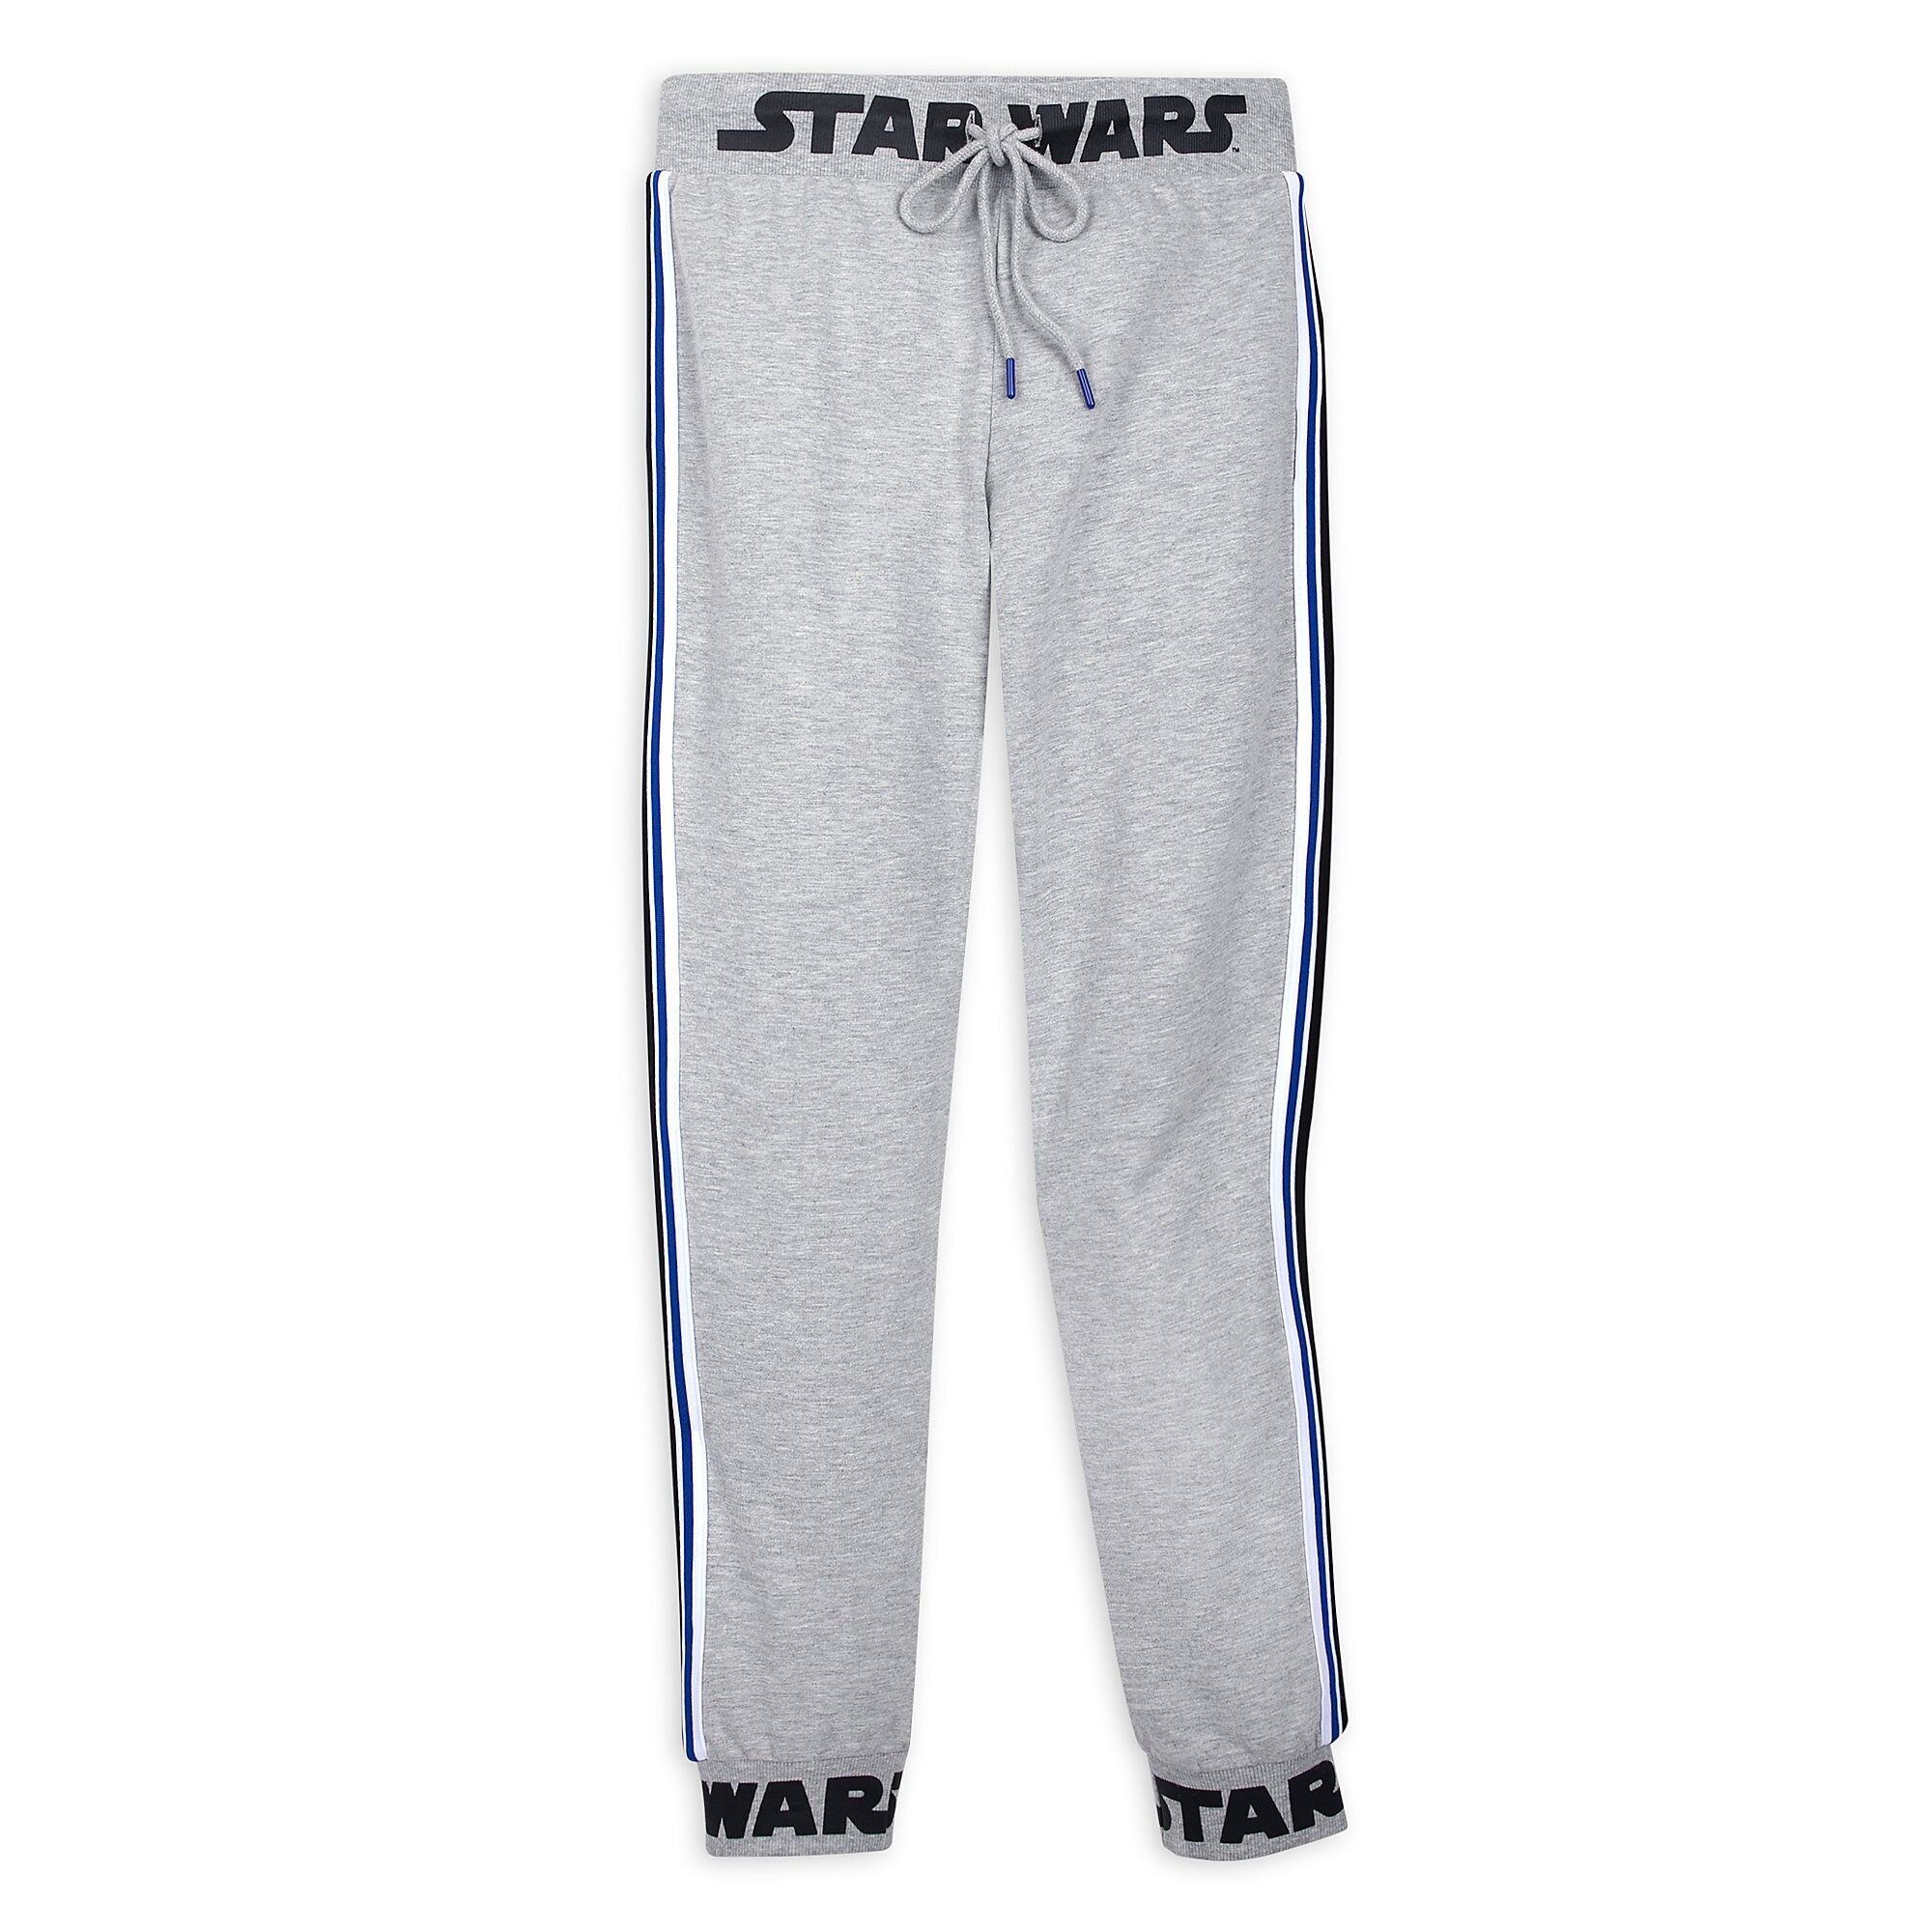 Star Wars Logo Sweatpants for Women